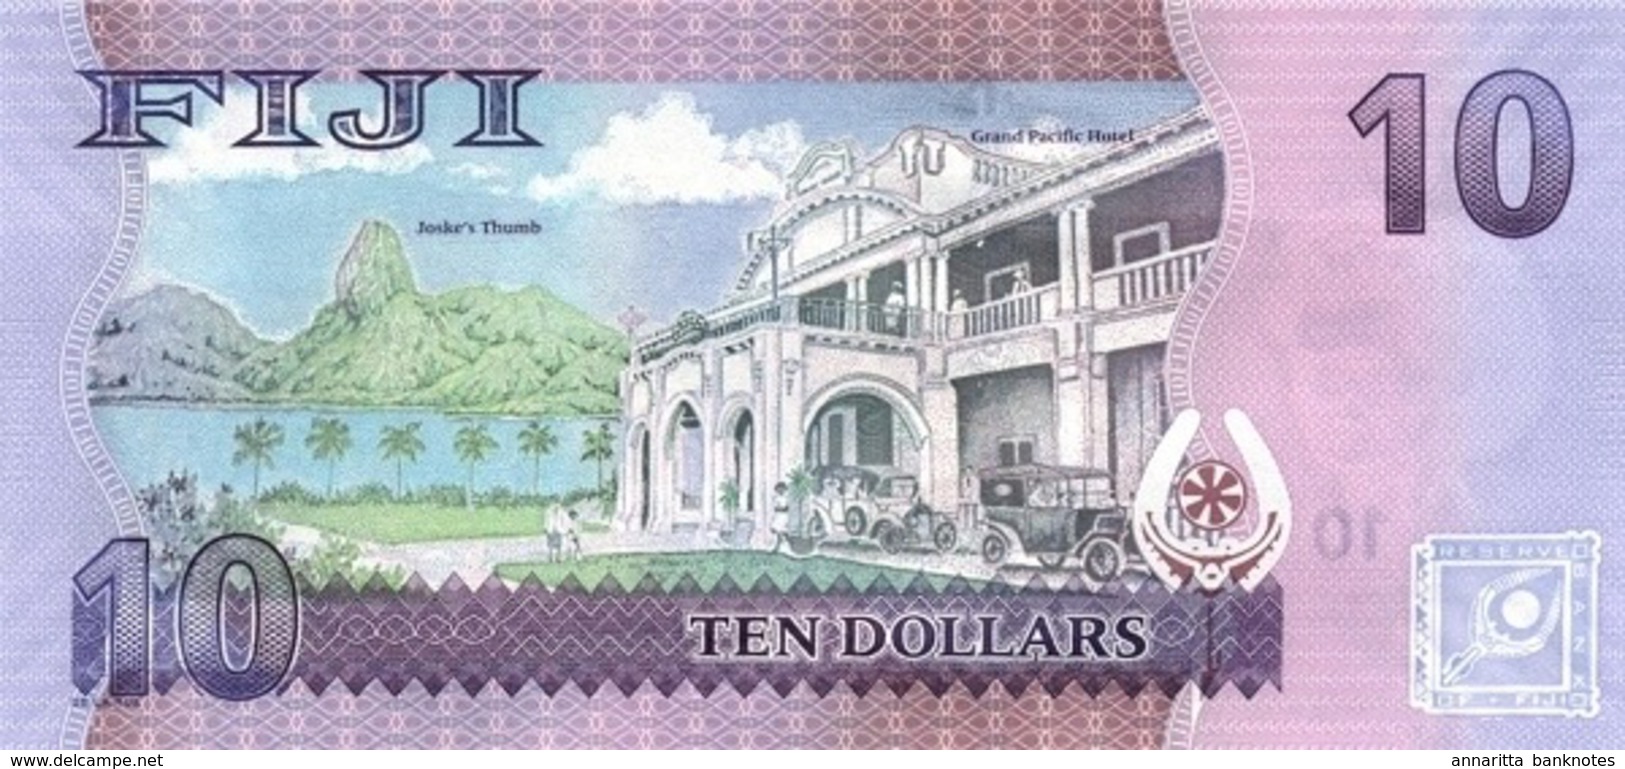 FIJI 10 DOLLARS ND (2013) P-116 UNC  [FJ527a] - Fidschi